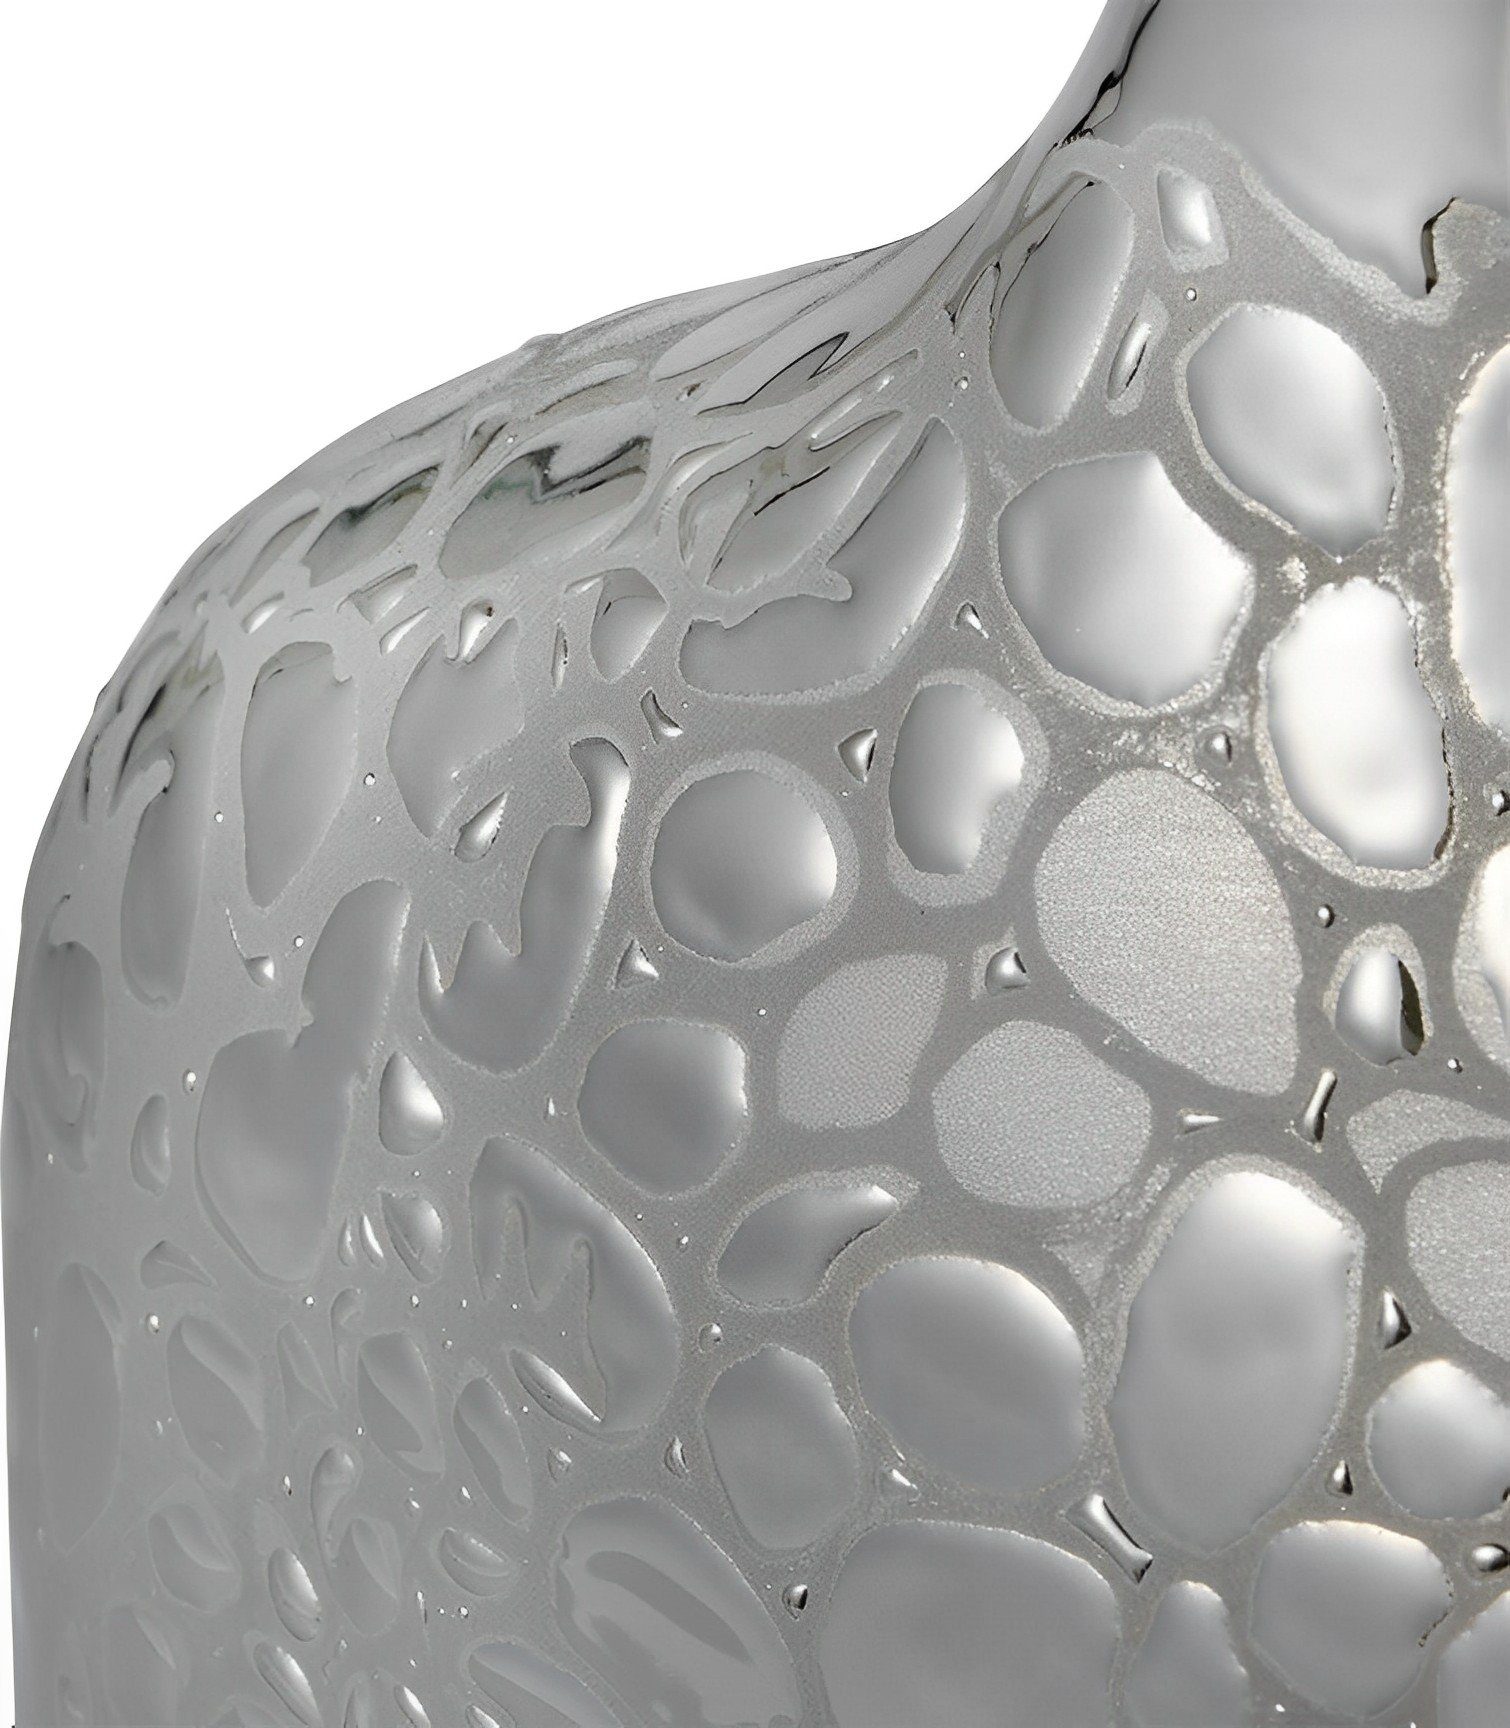 Silber, Stein Verzierte Dekovase Dekonaz 16x30cm Vase, Porzellan